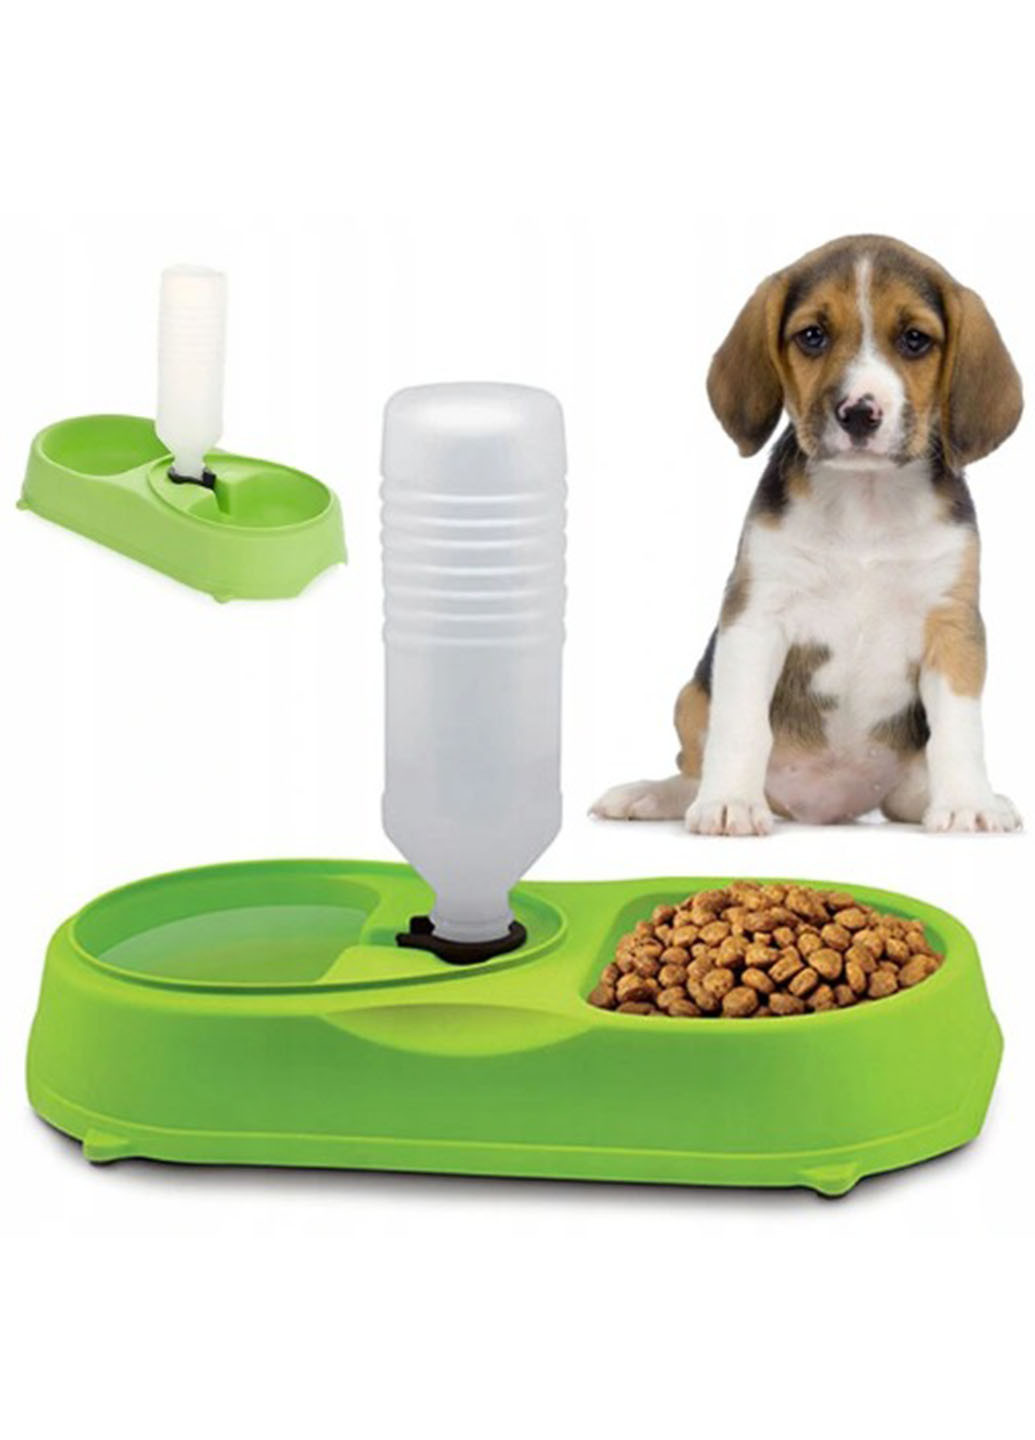 Подвійна миска з поїлкою Pet Feeder для домашніх тварин пластикова 35 см х 17 см х 5.5 см Good Idea (271679546)